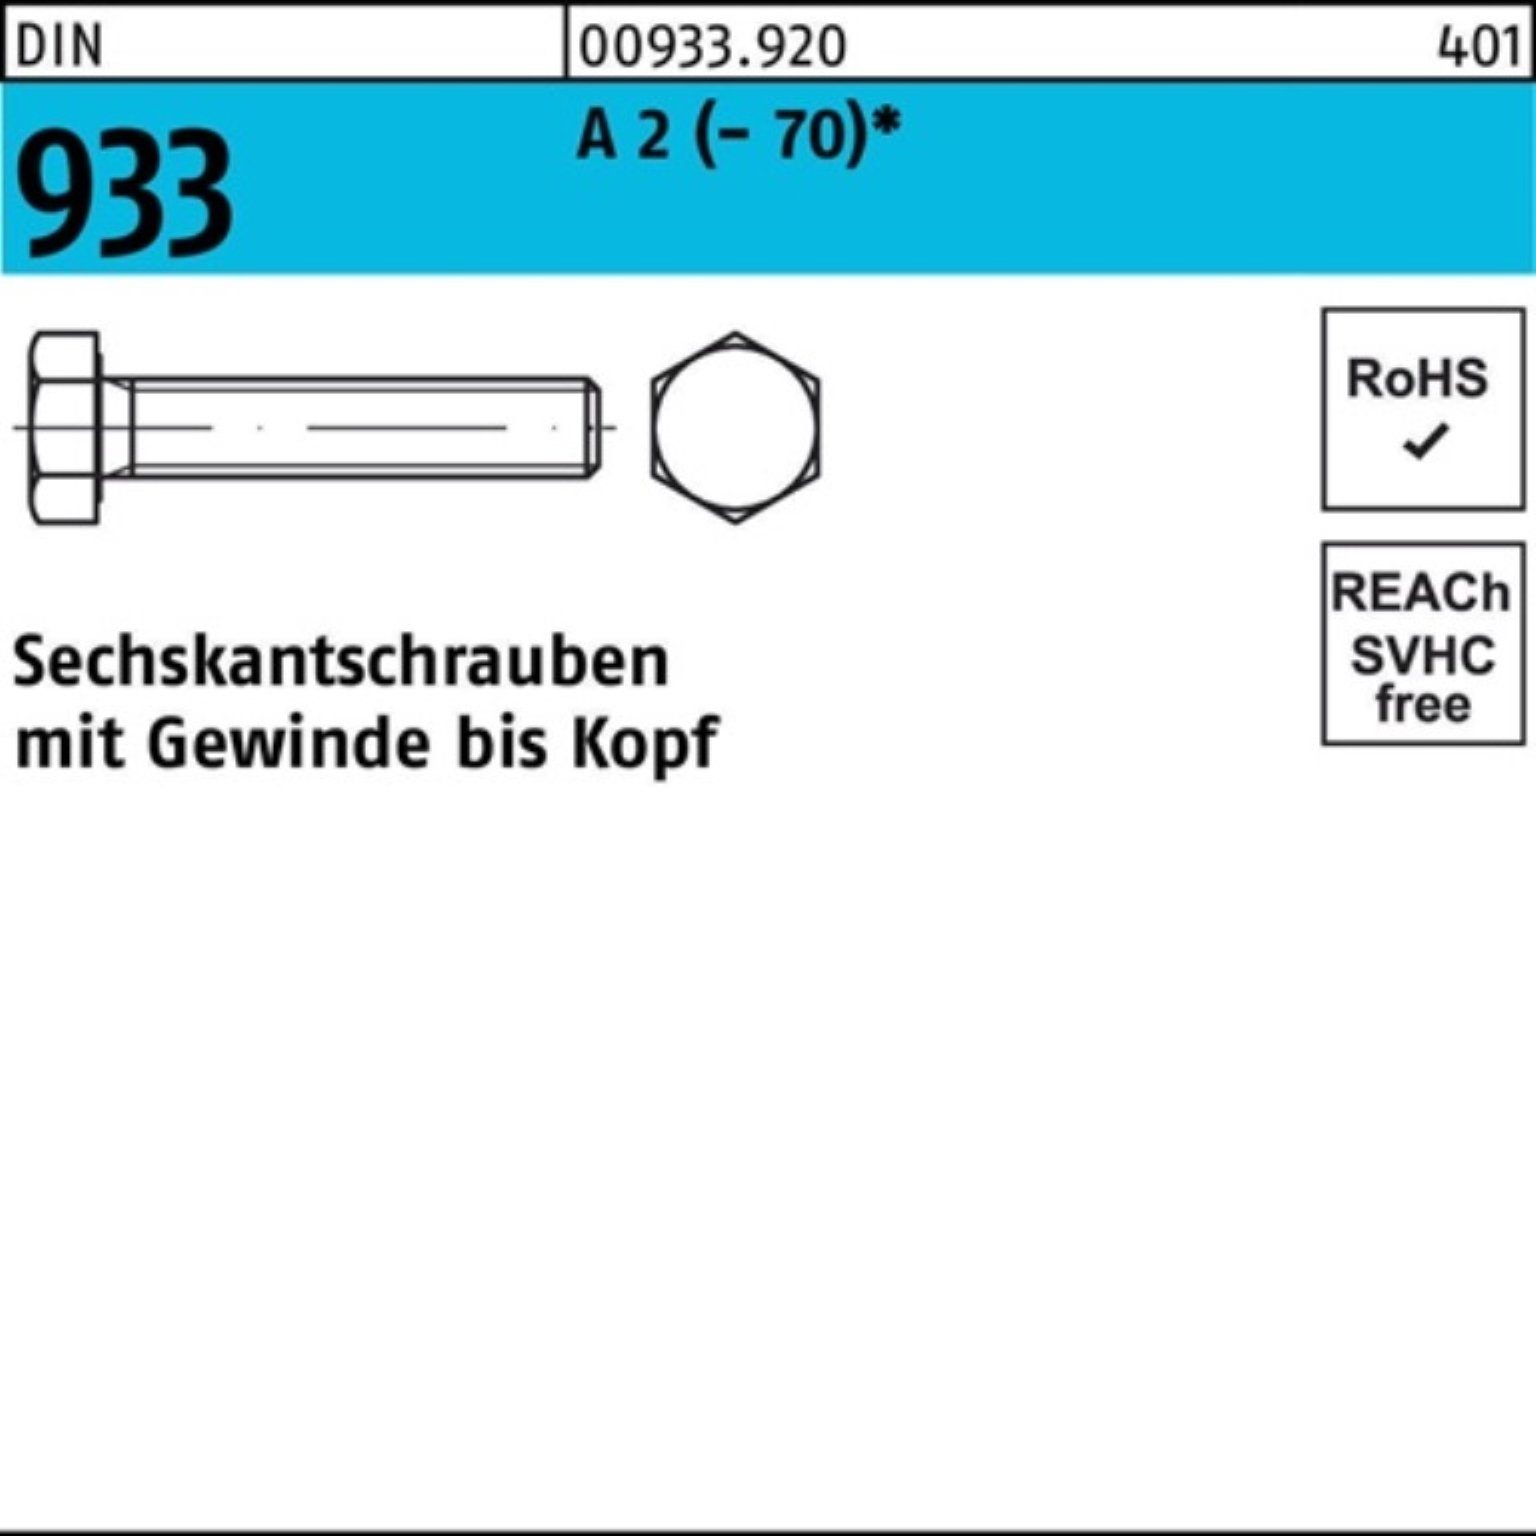 Reyher Sechskantschraube 200er Sechskantschraube Pack 20 VG 200 (70) Stück 2 933 DIN A D M8x